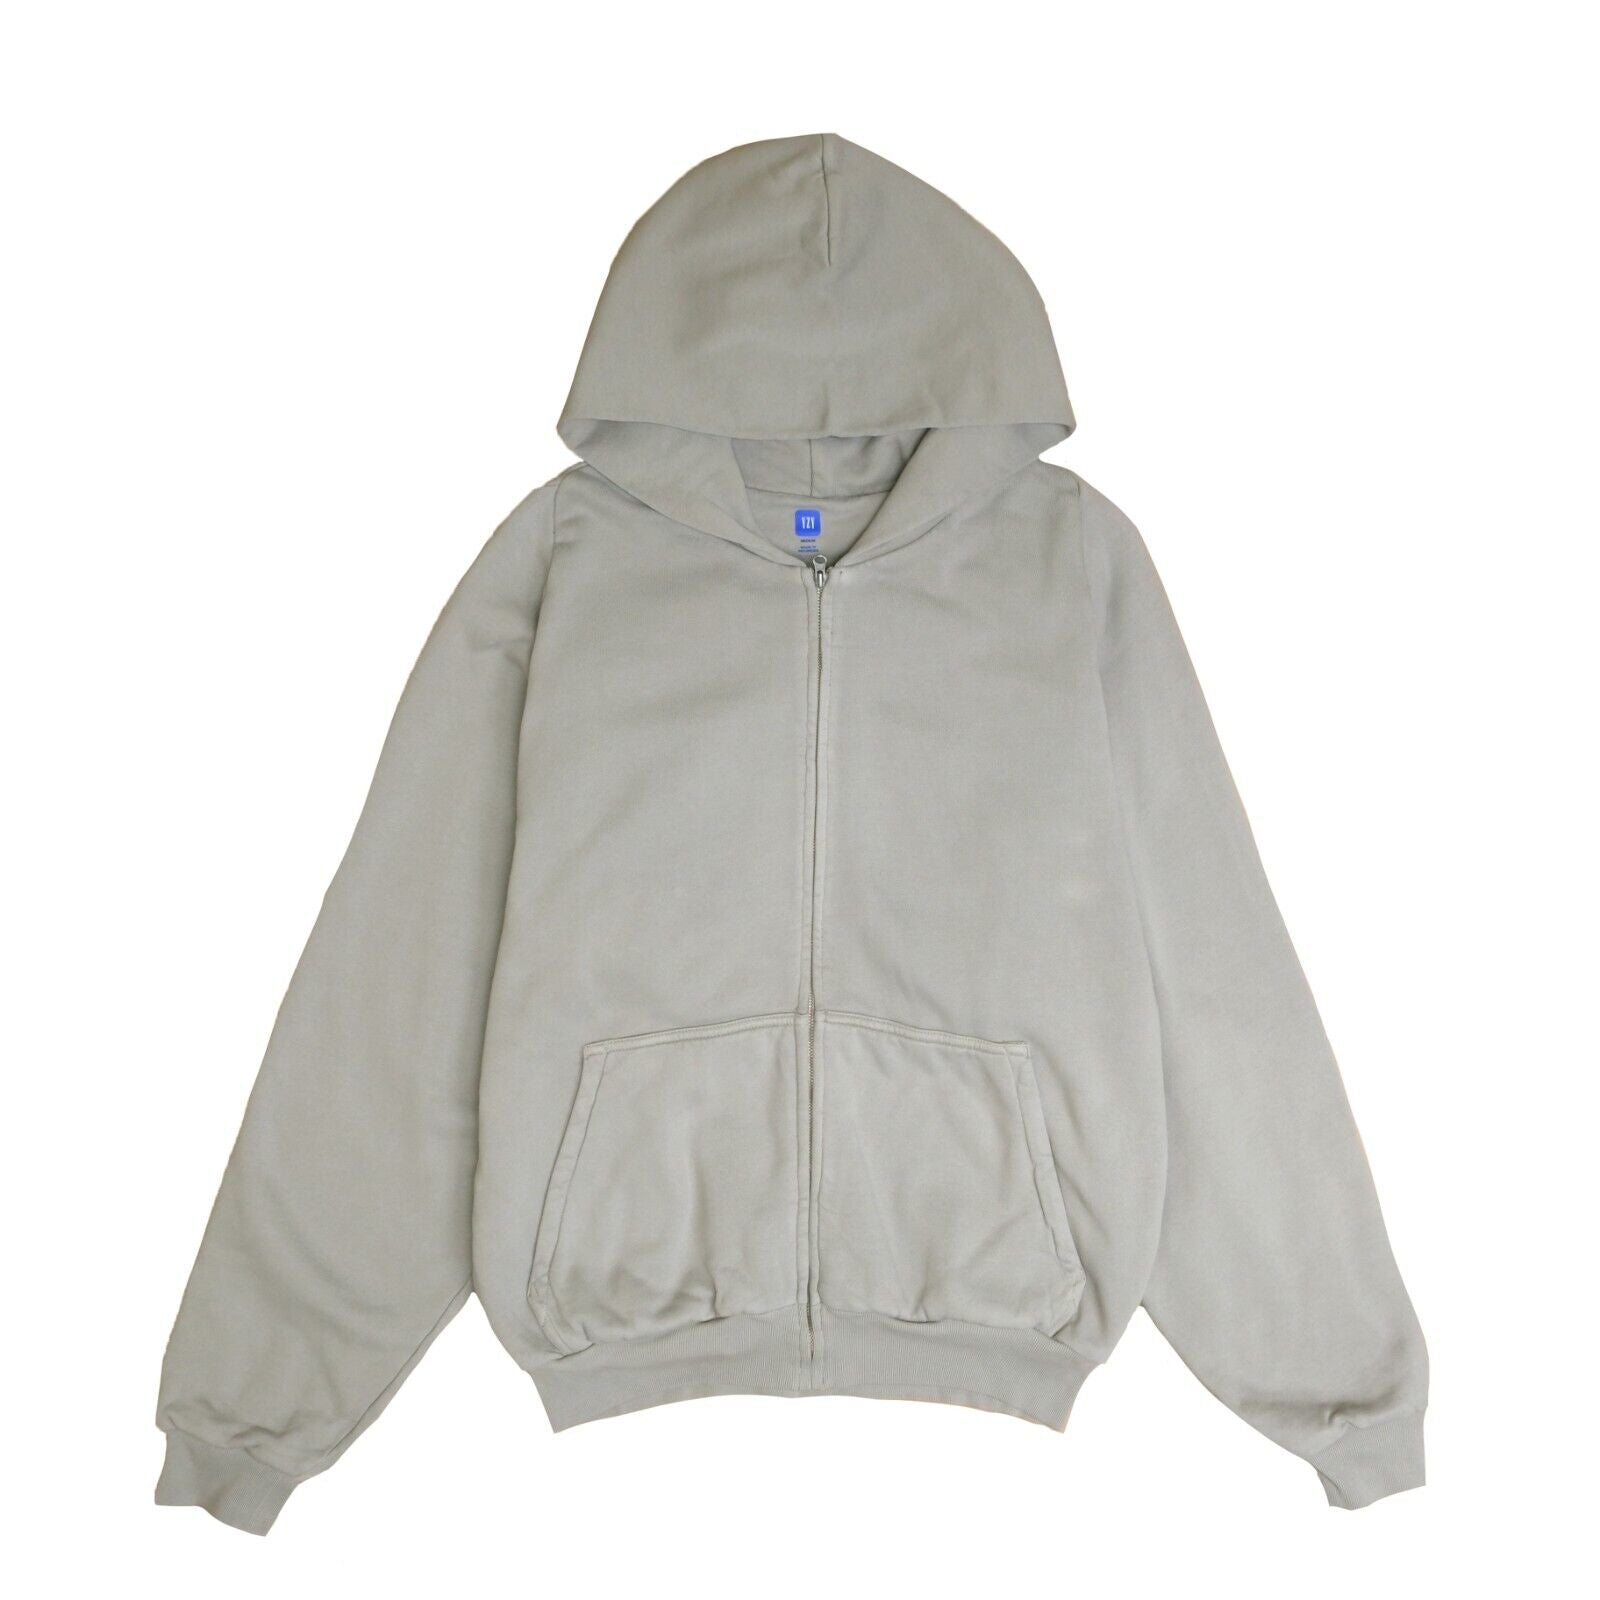 Yeezy Gap Unreleased Zip Sweatshirt Hoodie Size XL Dark Gray 